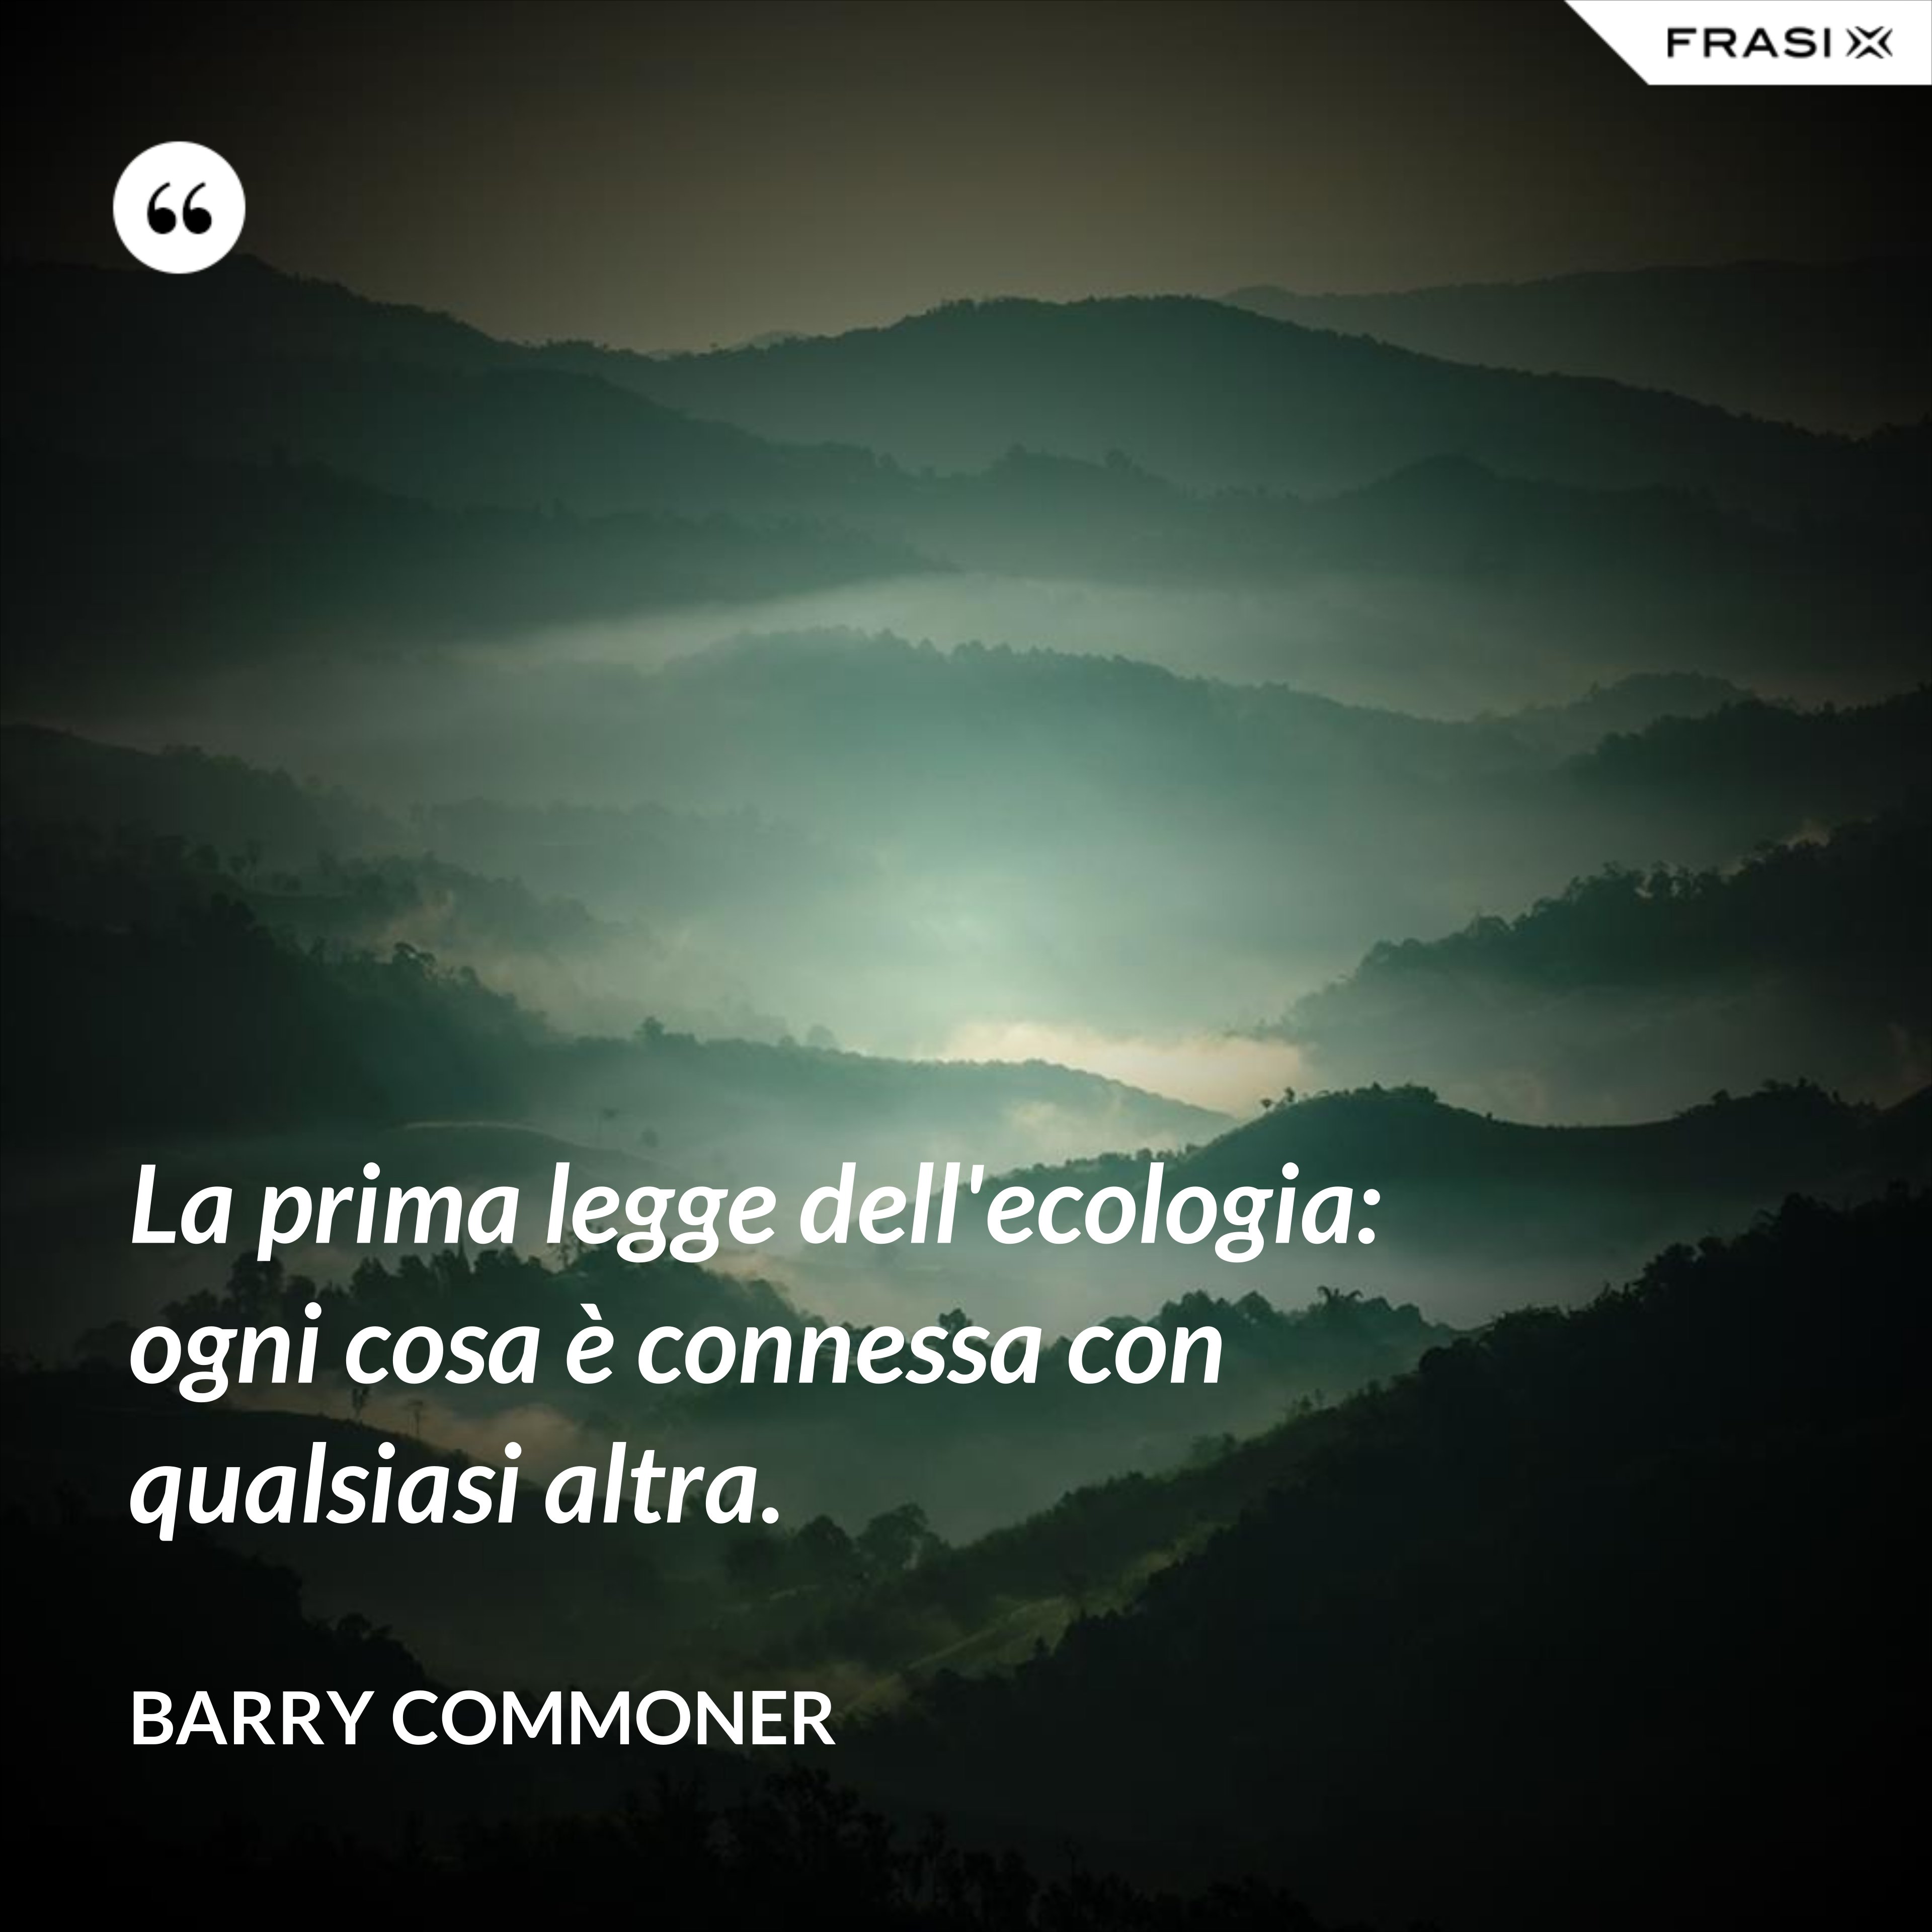 La prima legge dell'ecologia: ogni cosa è connessa con qualsiasi altra. - Barry Commoner